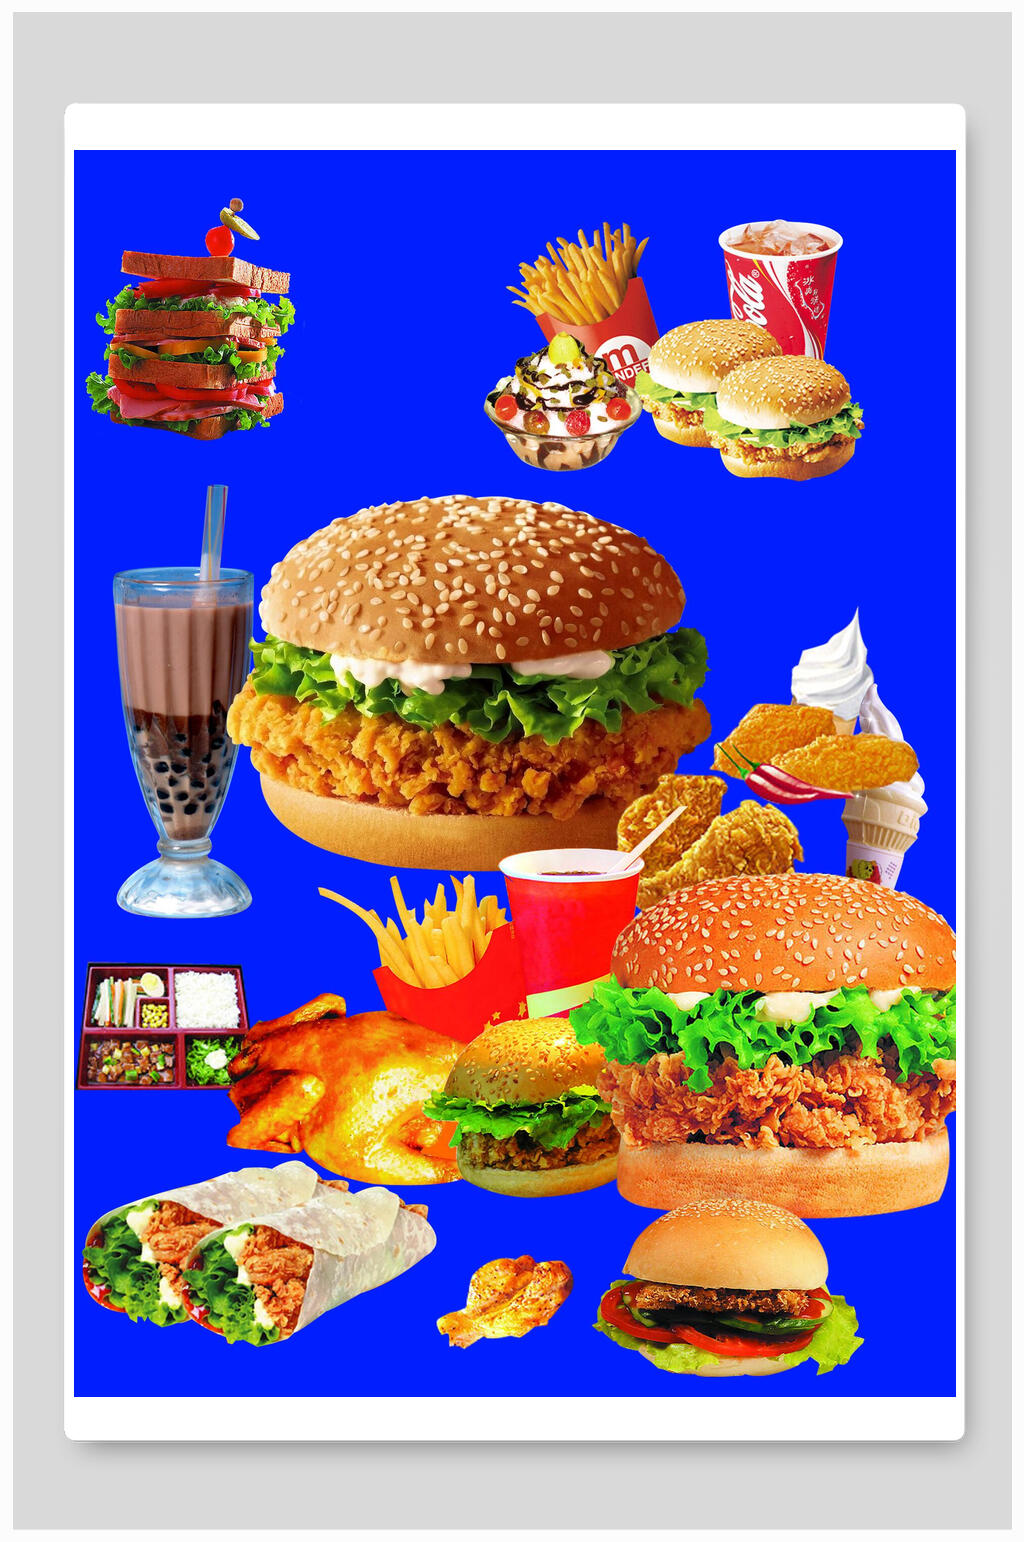 汉堡薯条海报素材免费下载,本作品是由小红1210上传的原创平面广告